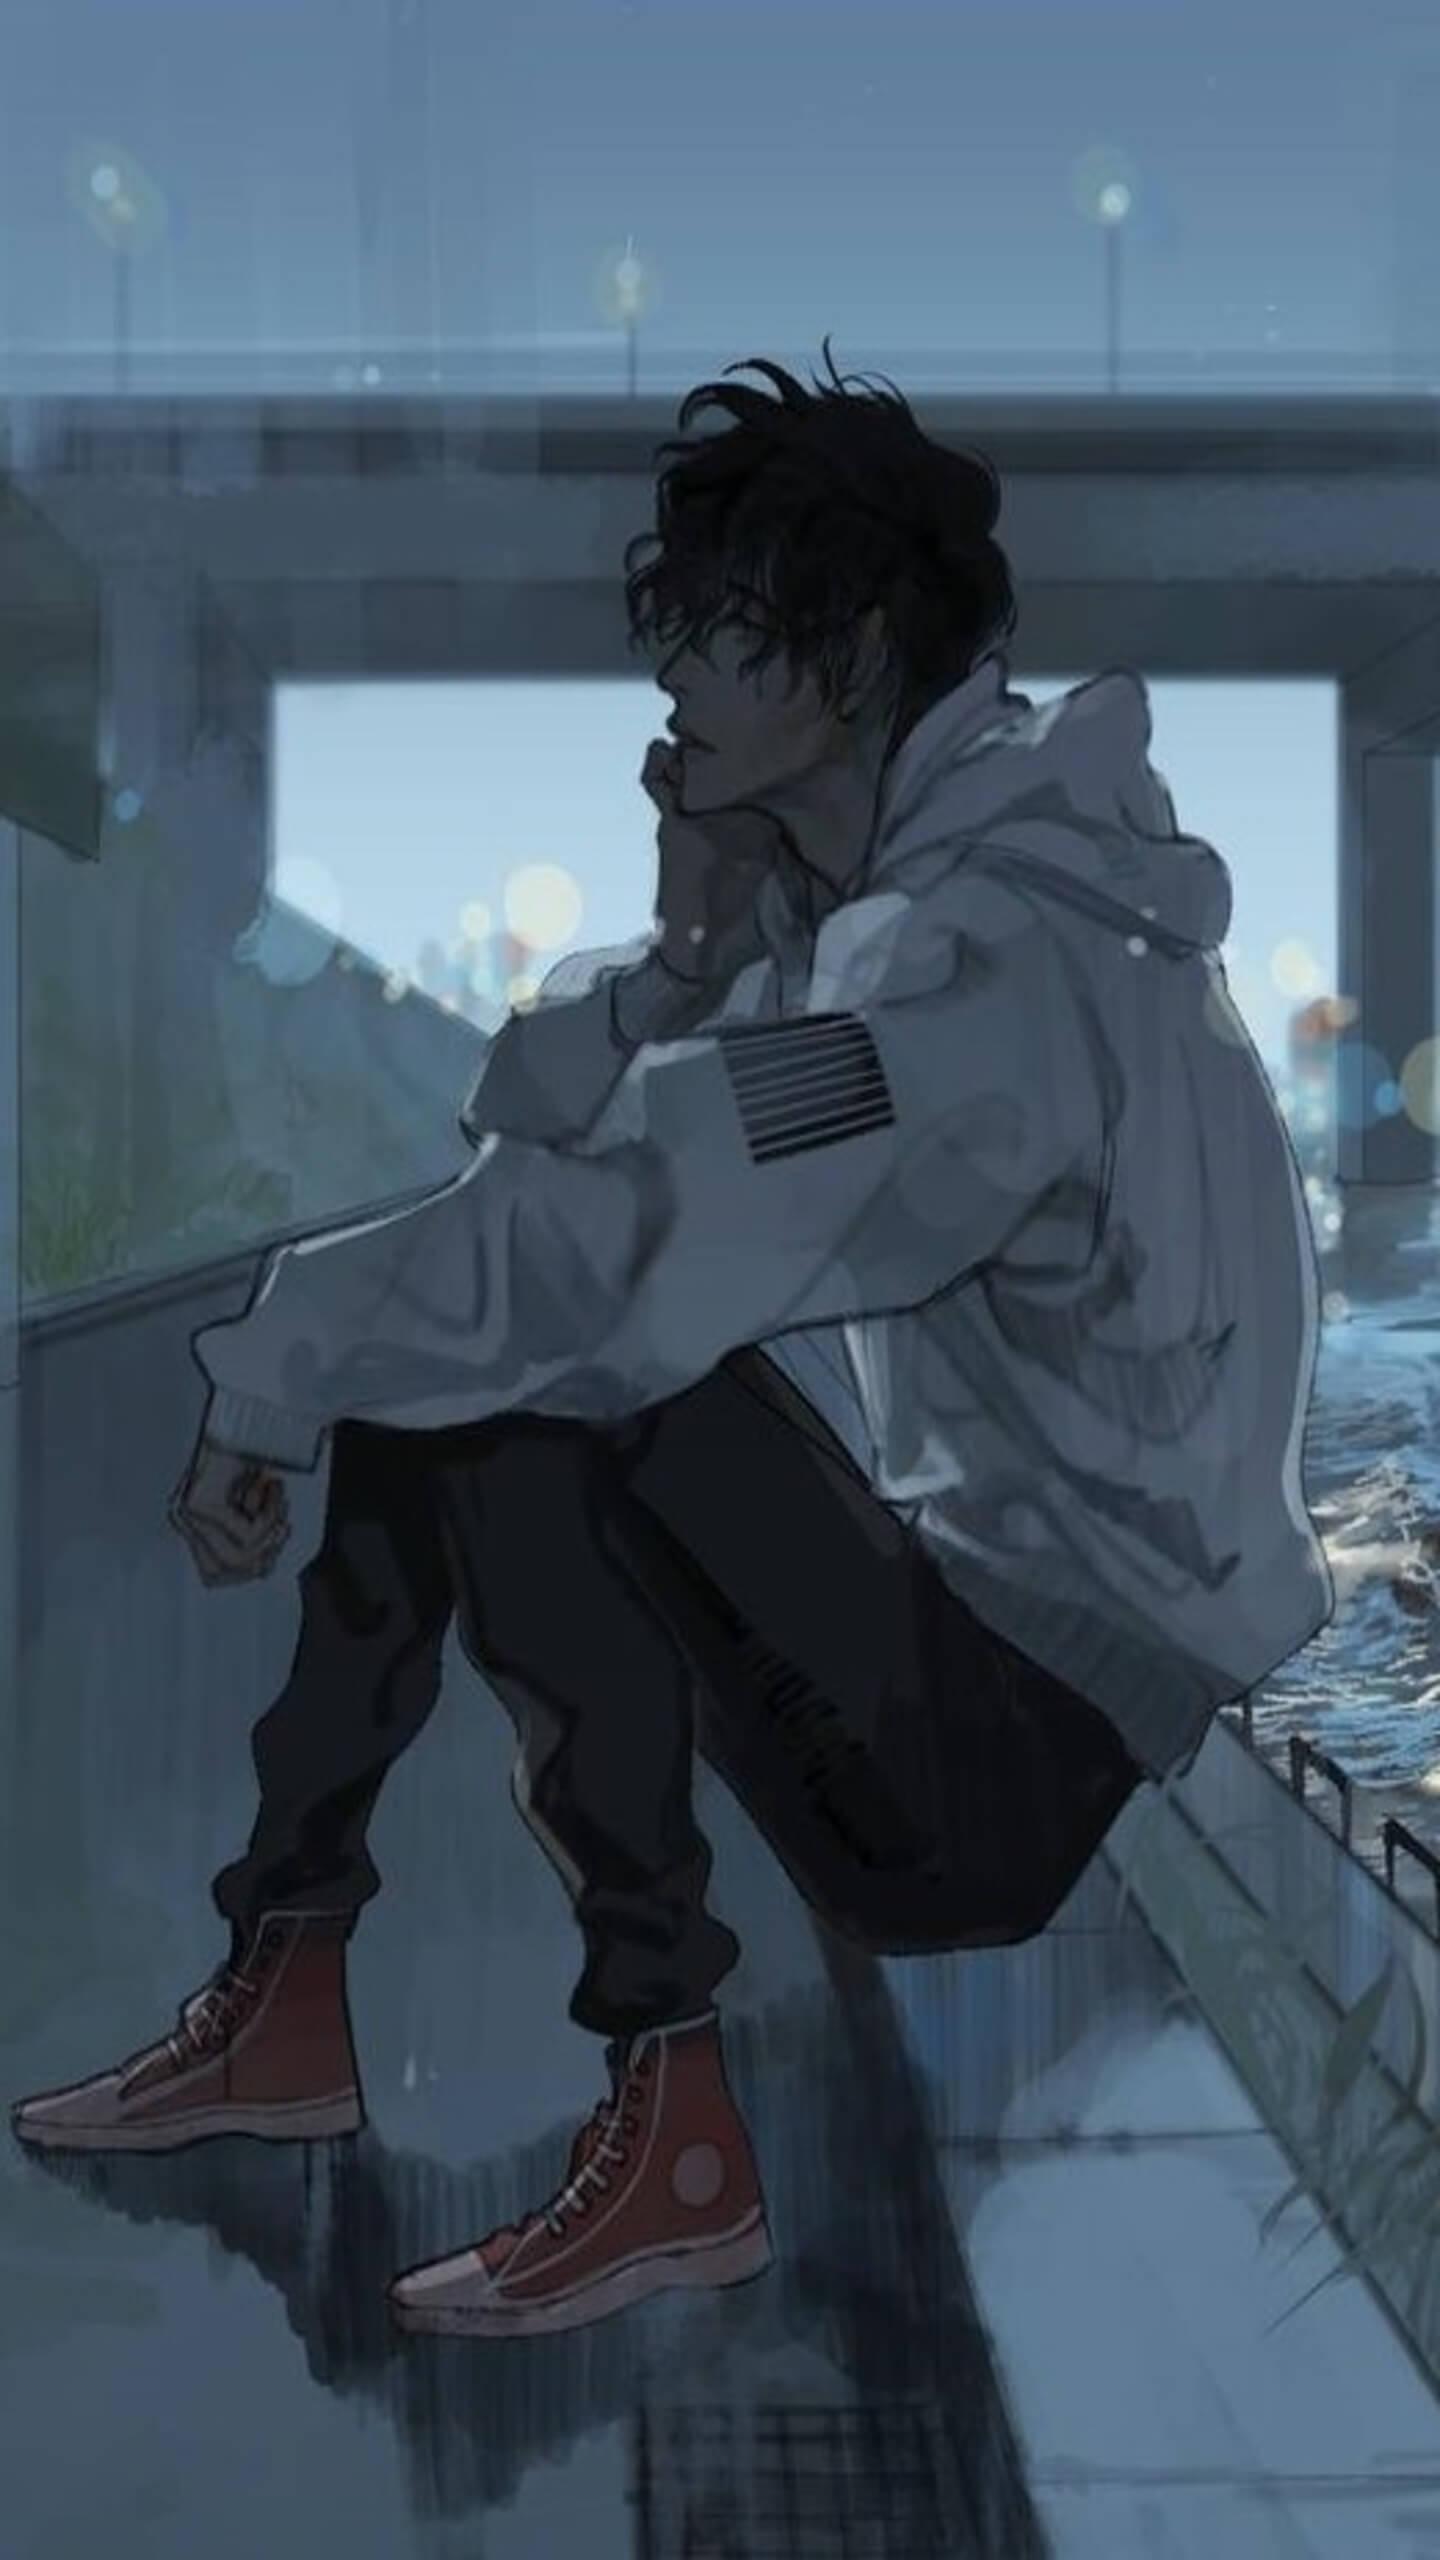 Sad Anime Guy Wallpapers - Top Free Sad Anime Guy Backgrounds